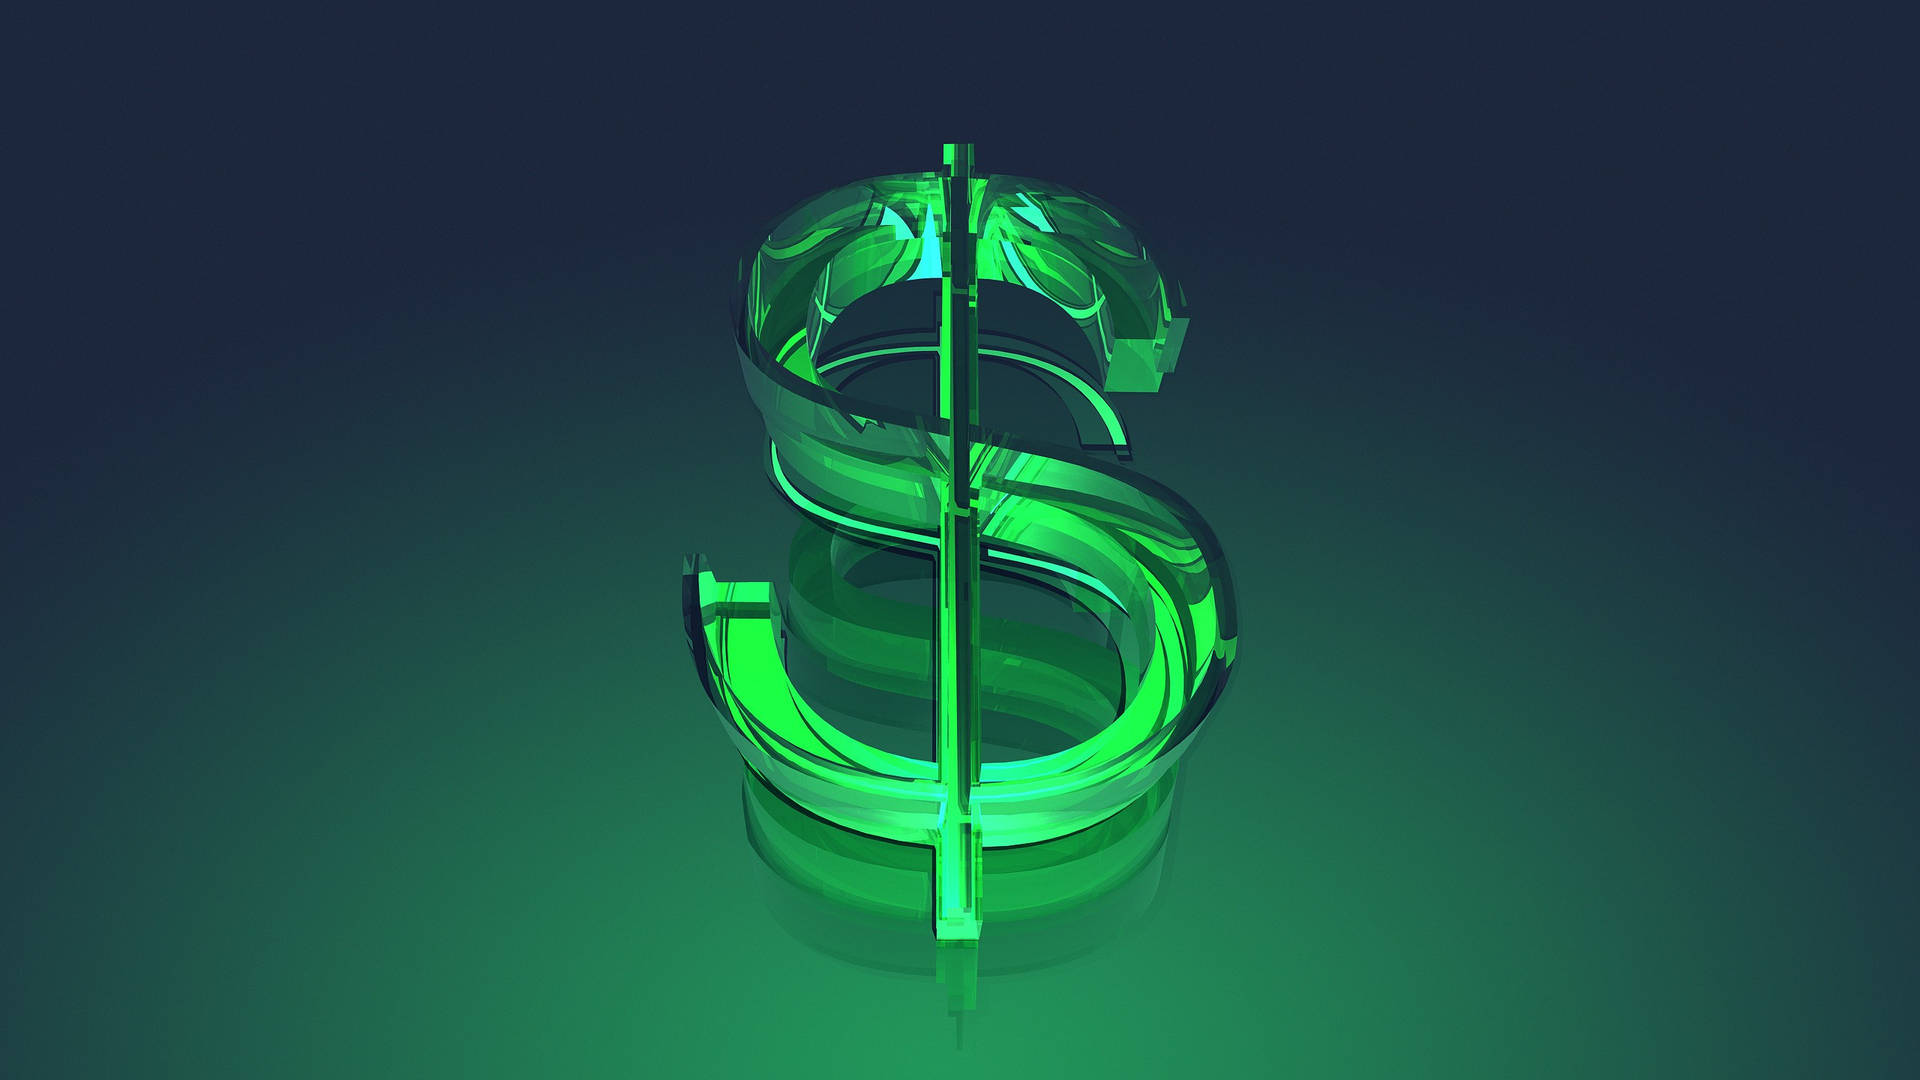 Umsinal De Dólar Verde Em Um Fundo Escuro Papel de Parede